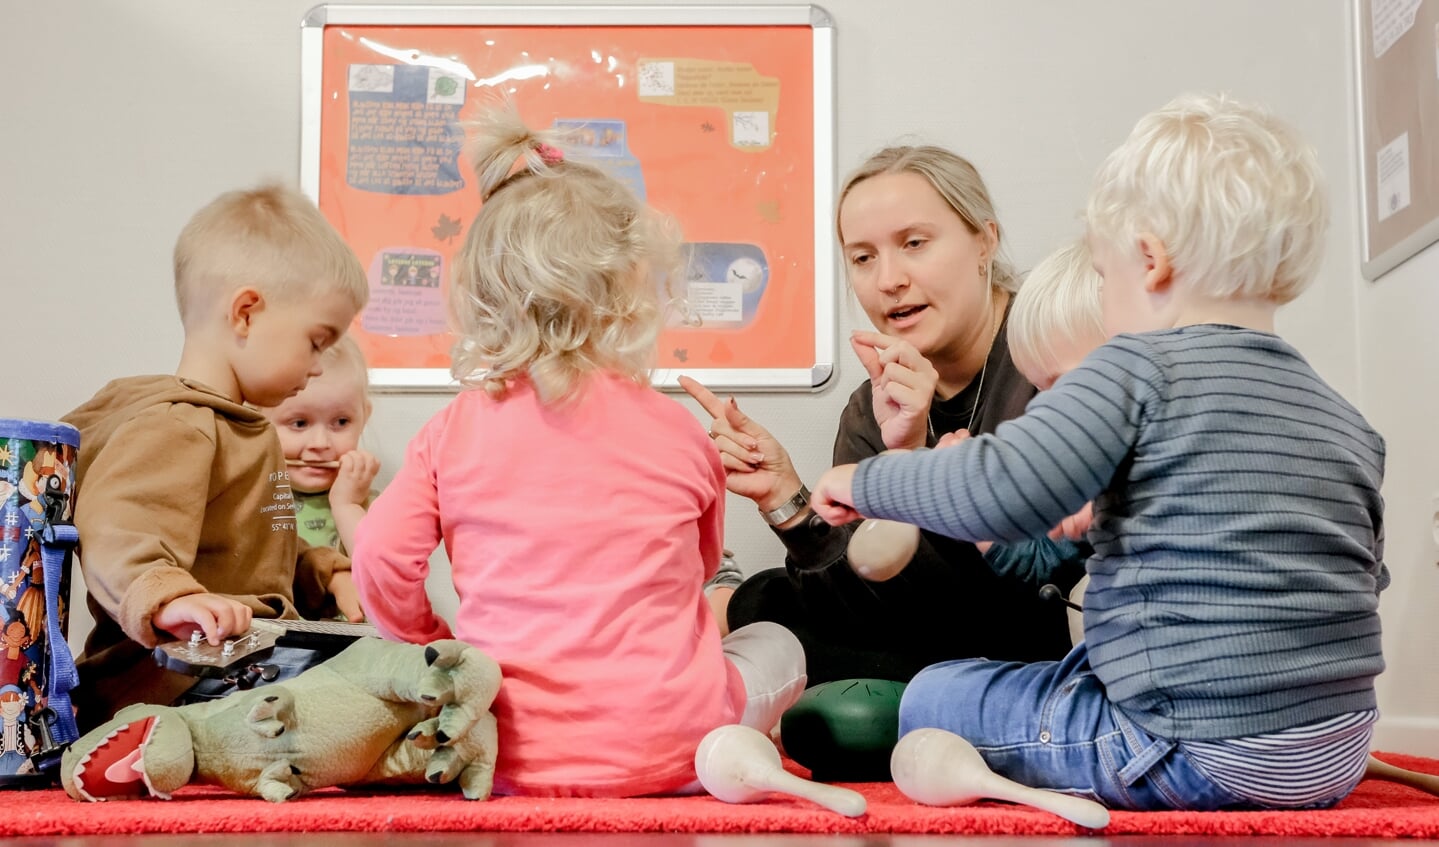 Pædagog Morlin Marxen er i gang med et musikprojekt med børnene i Karlsson Vuggestue, hvor børnene blandt andet har lavet deres egne instrumenter. Foto: